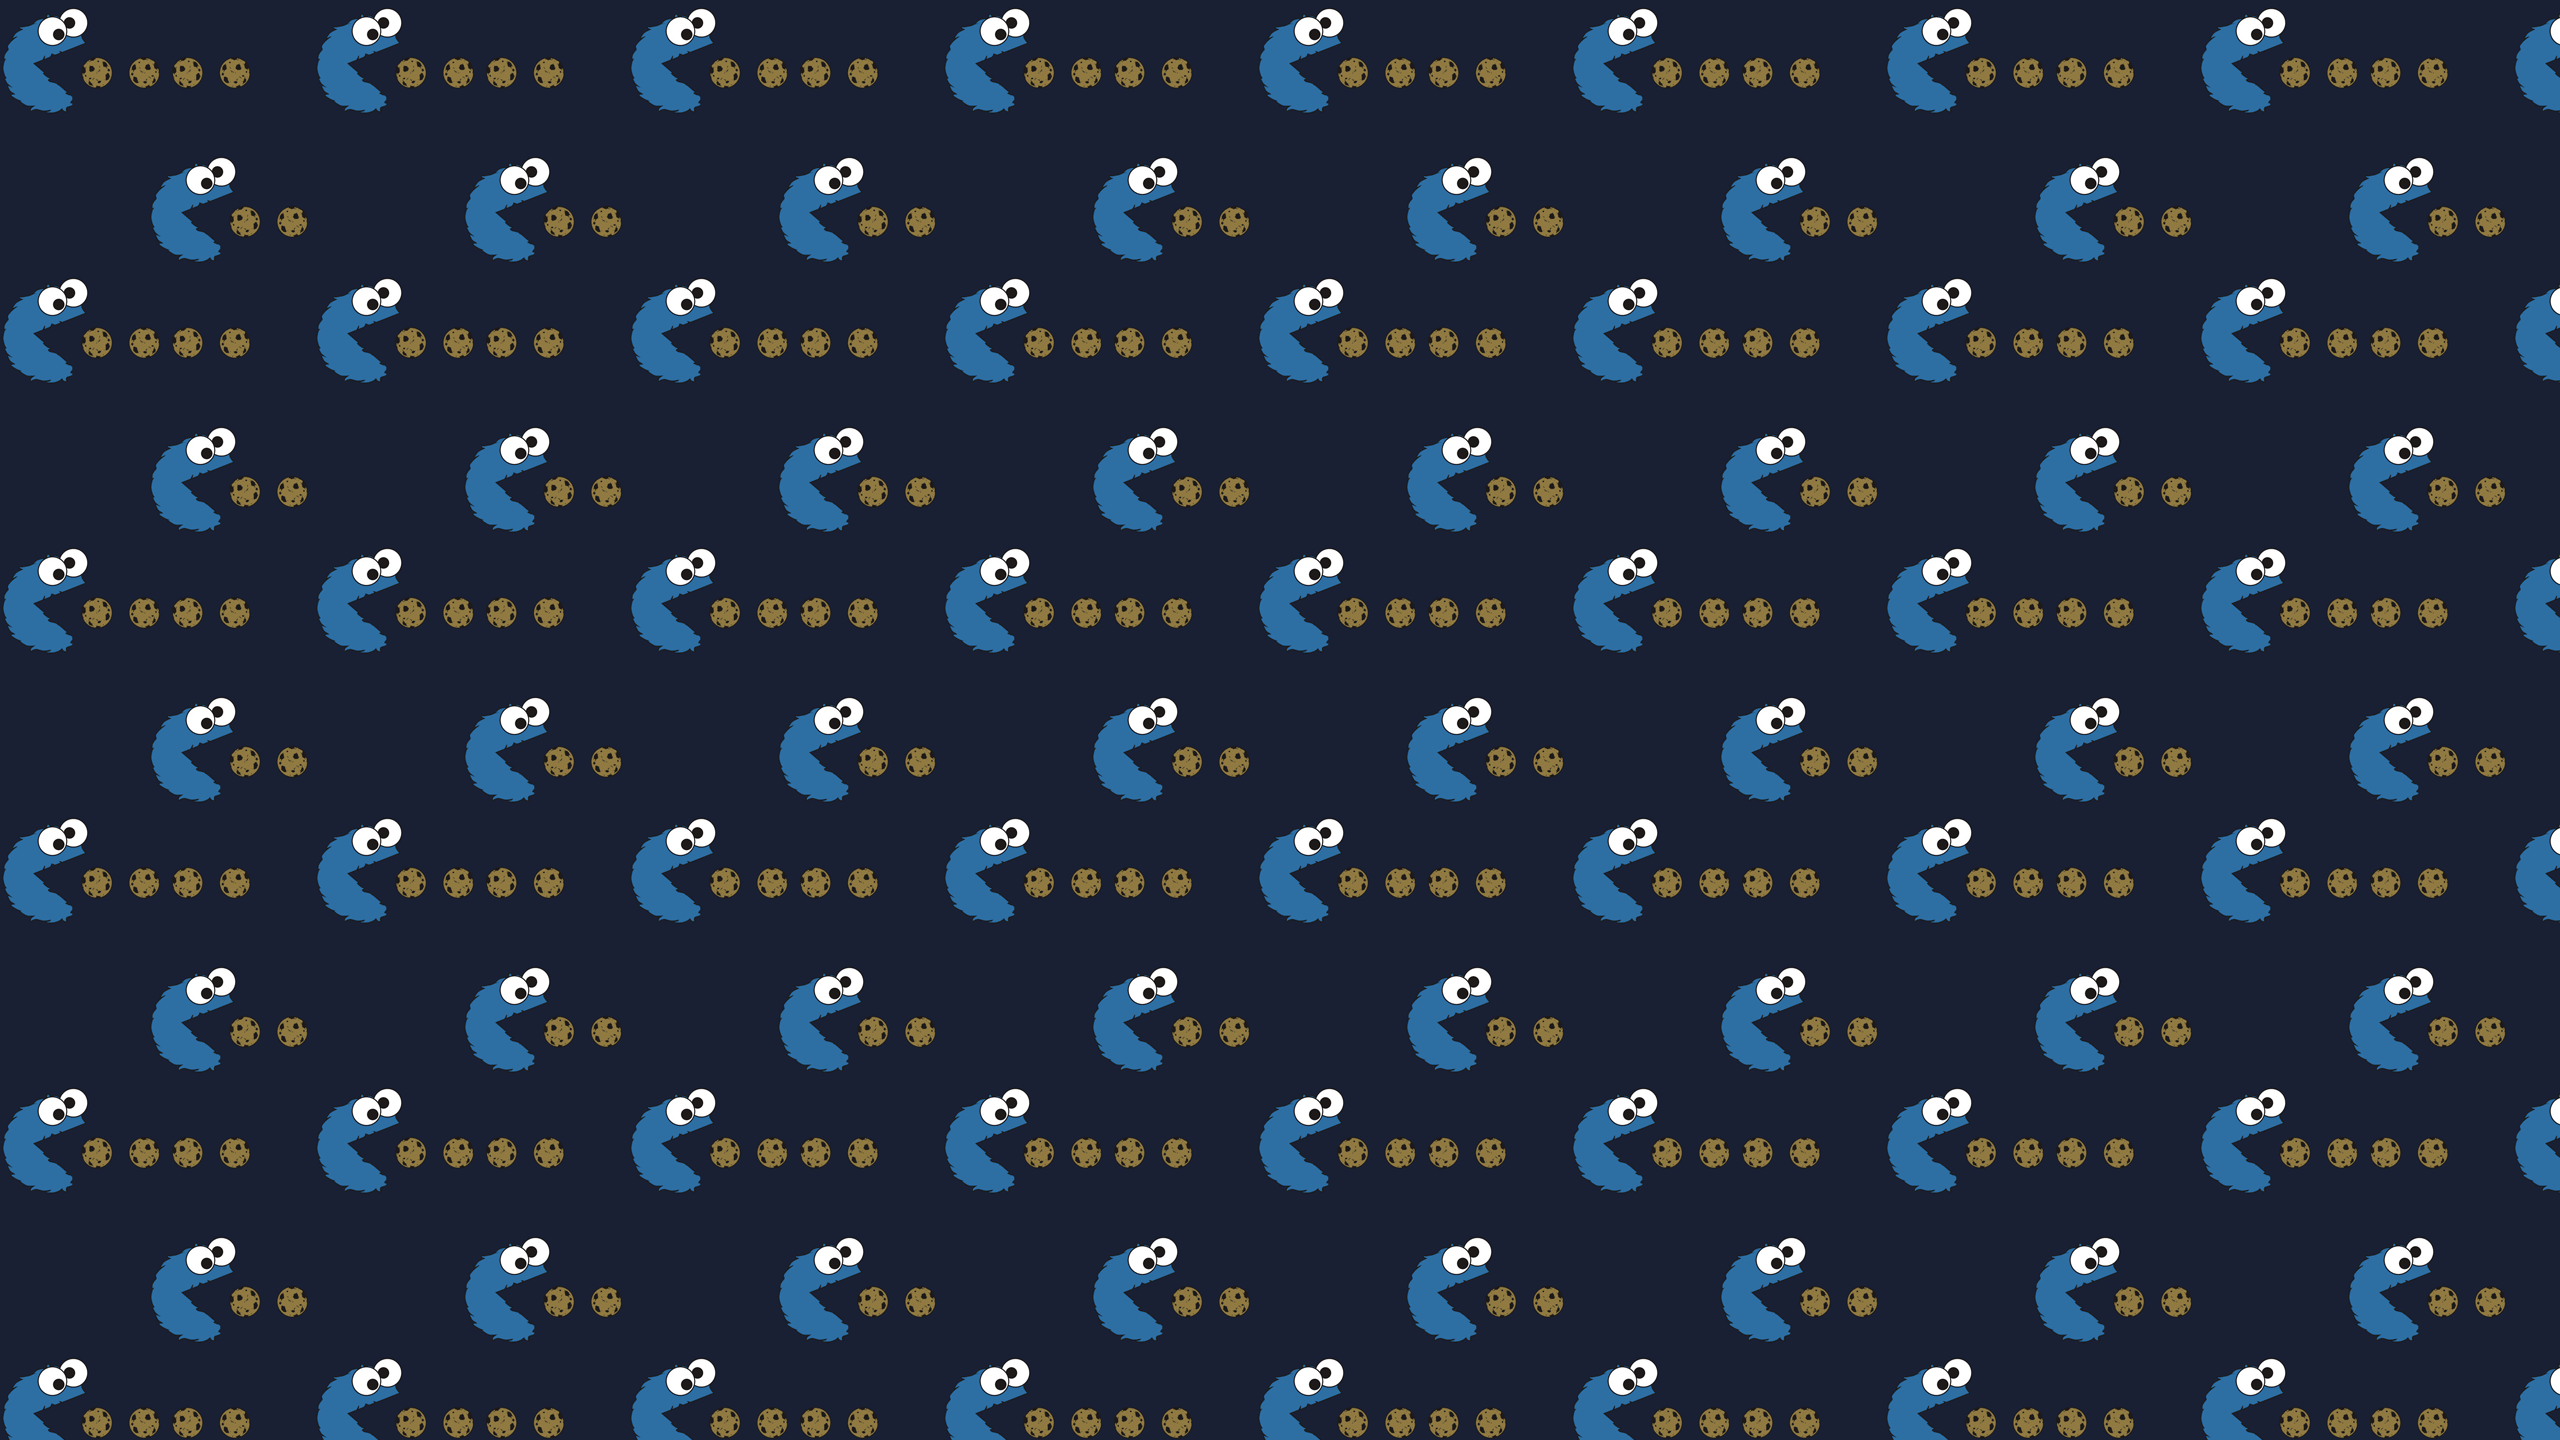 Cookie Monster Desktop Wallpaper